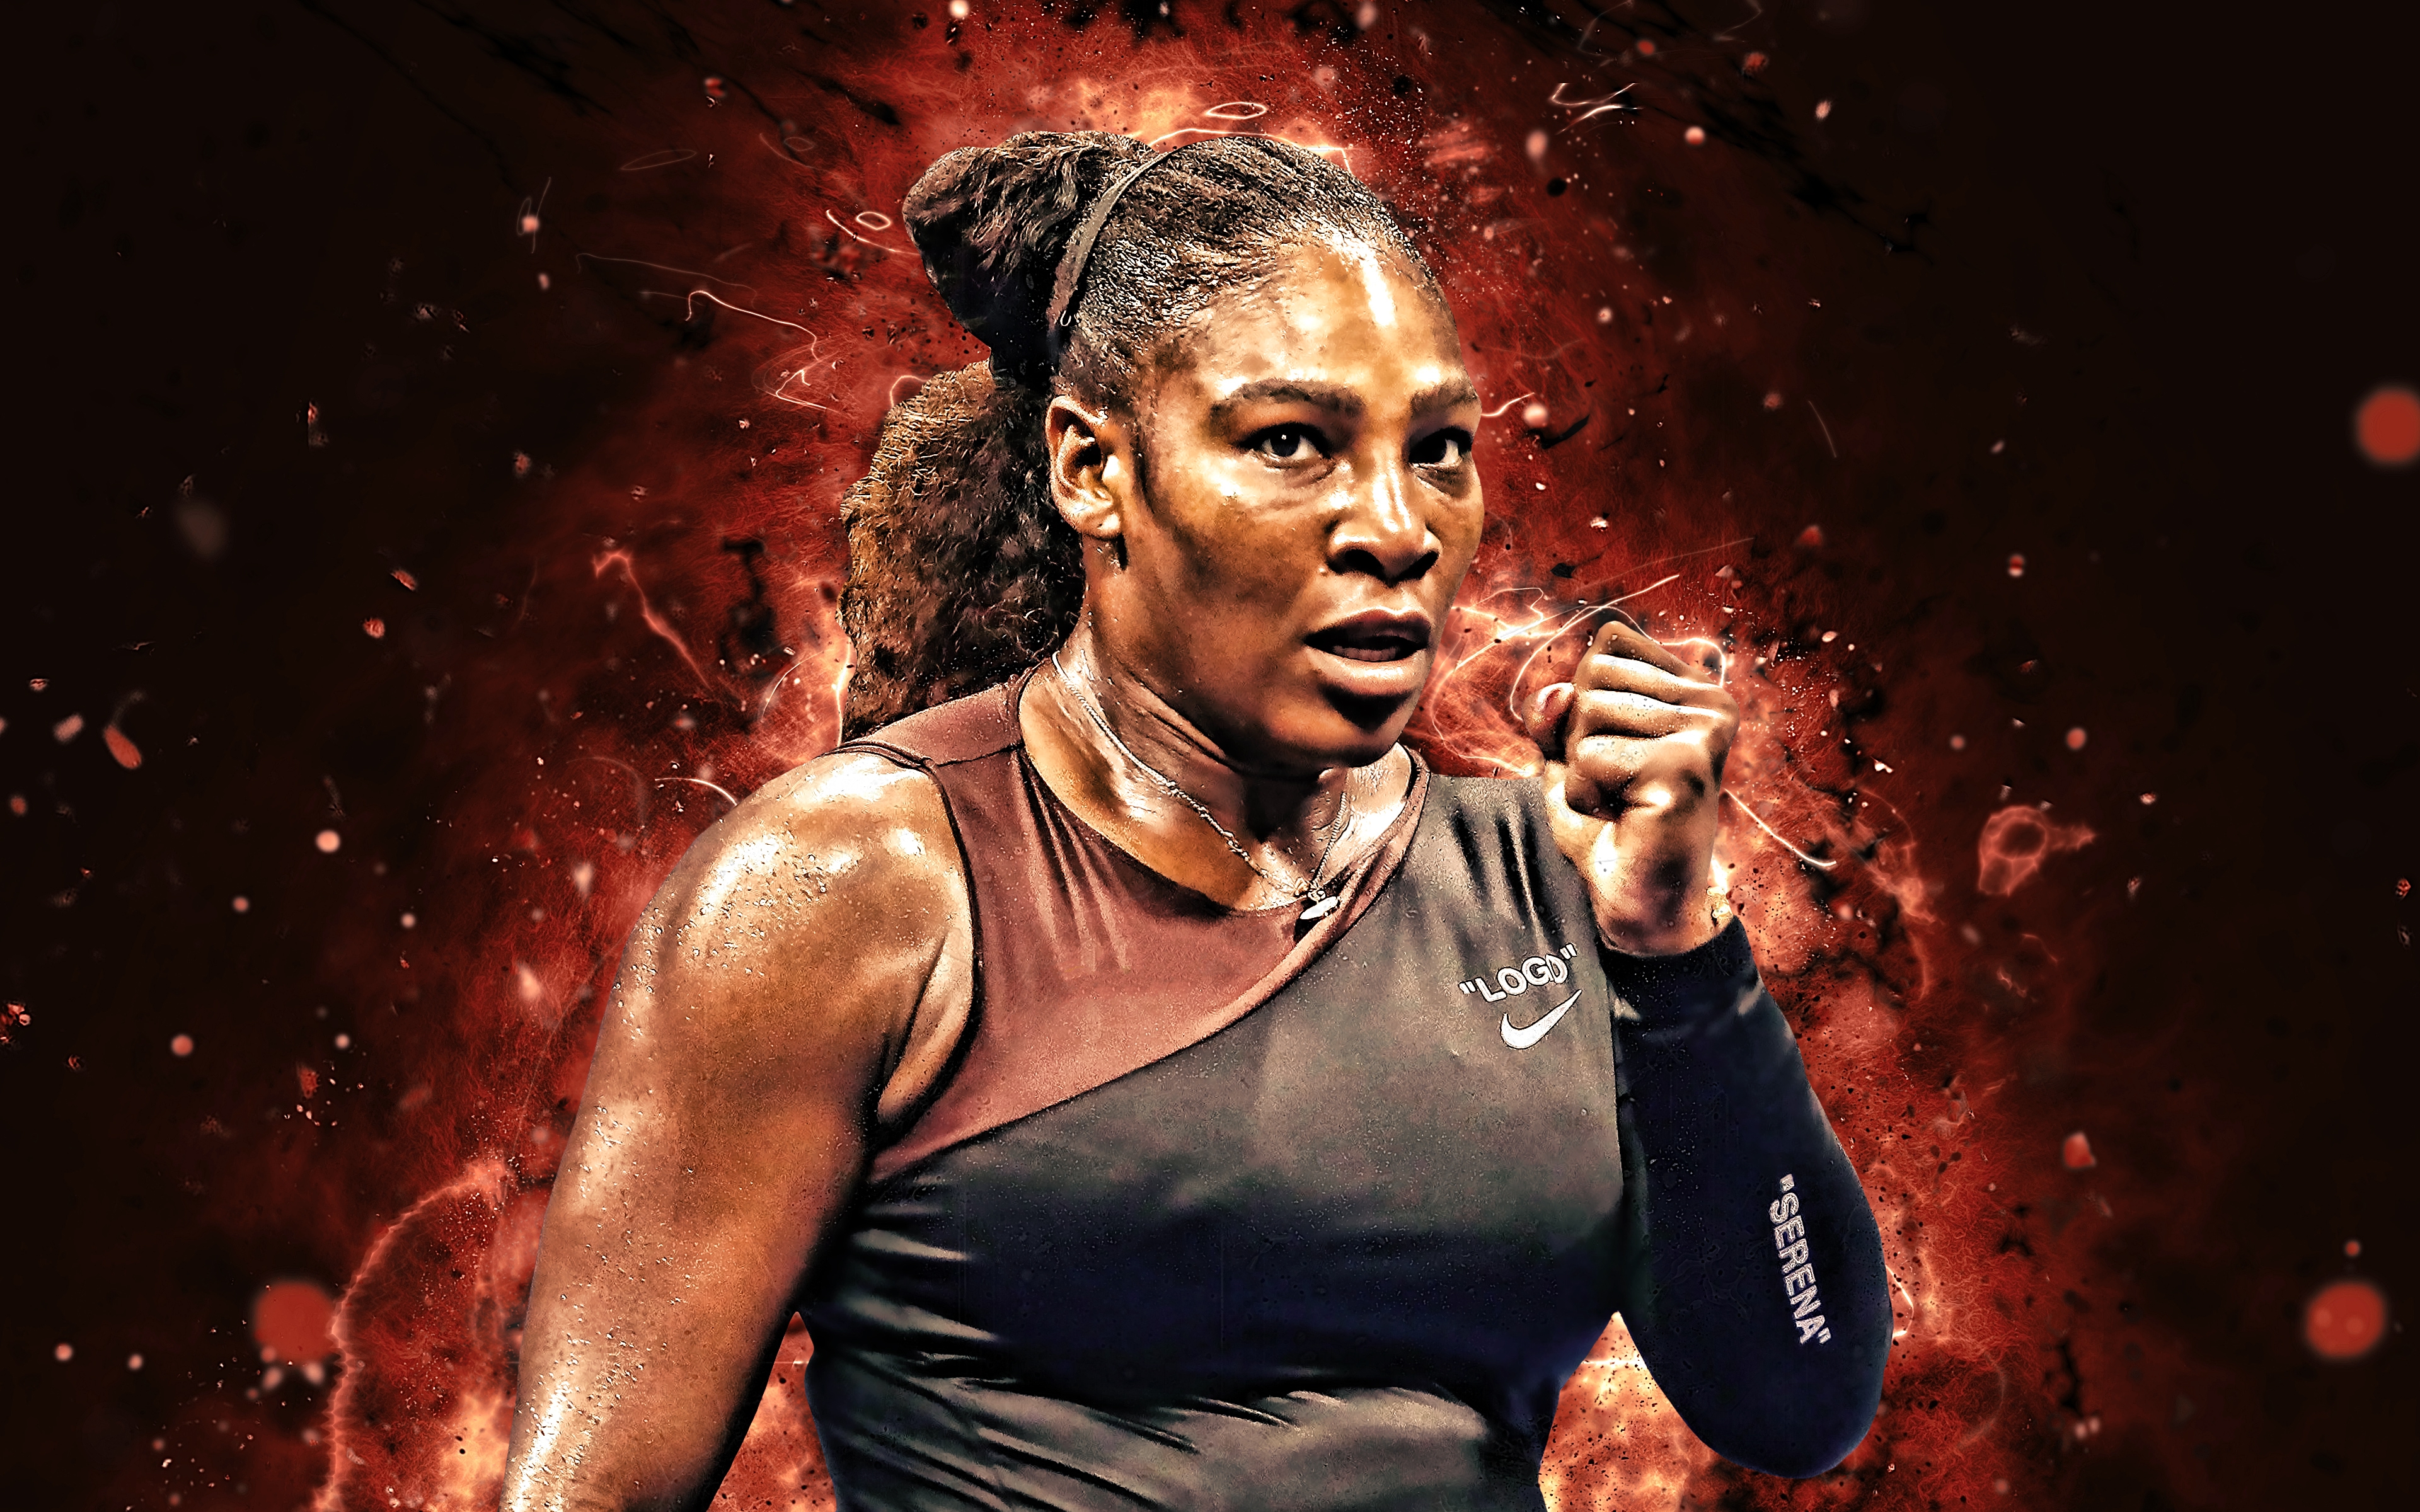 Serena Williams Images. 